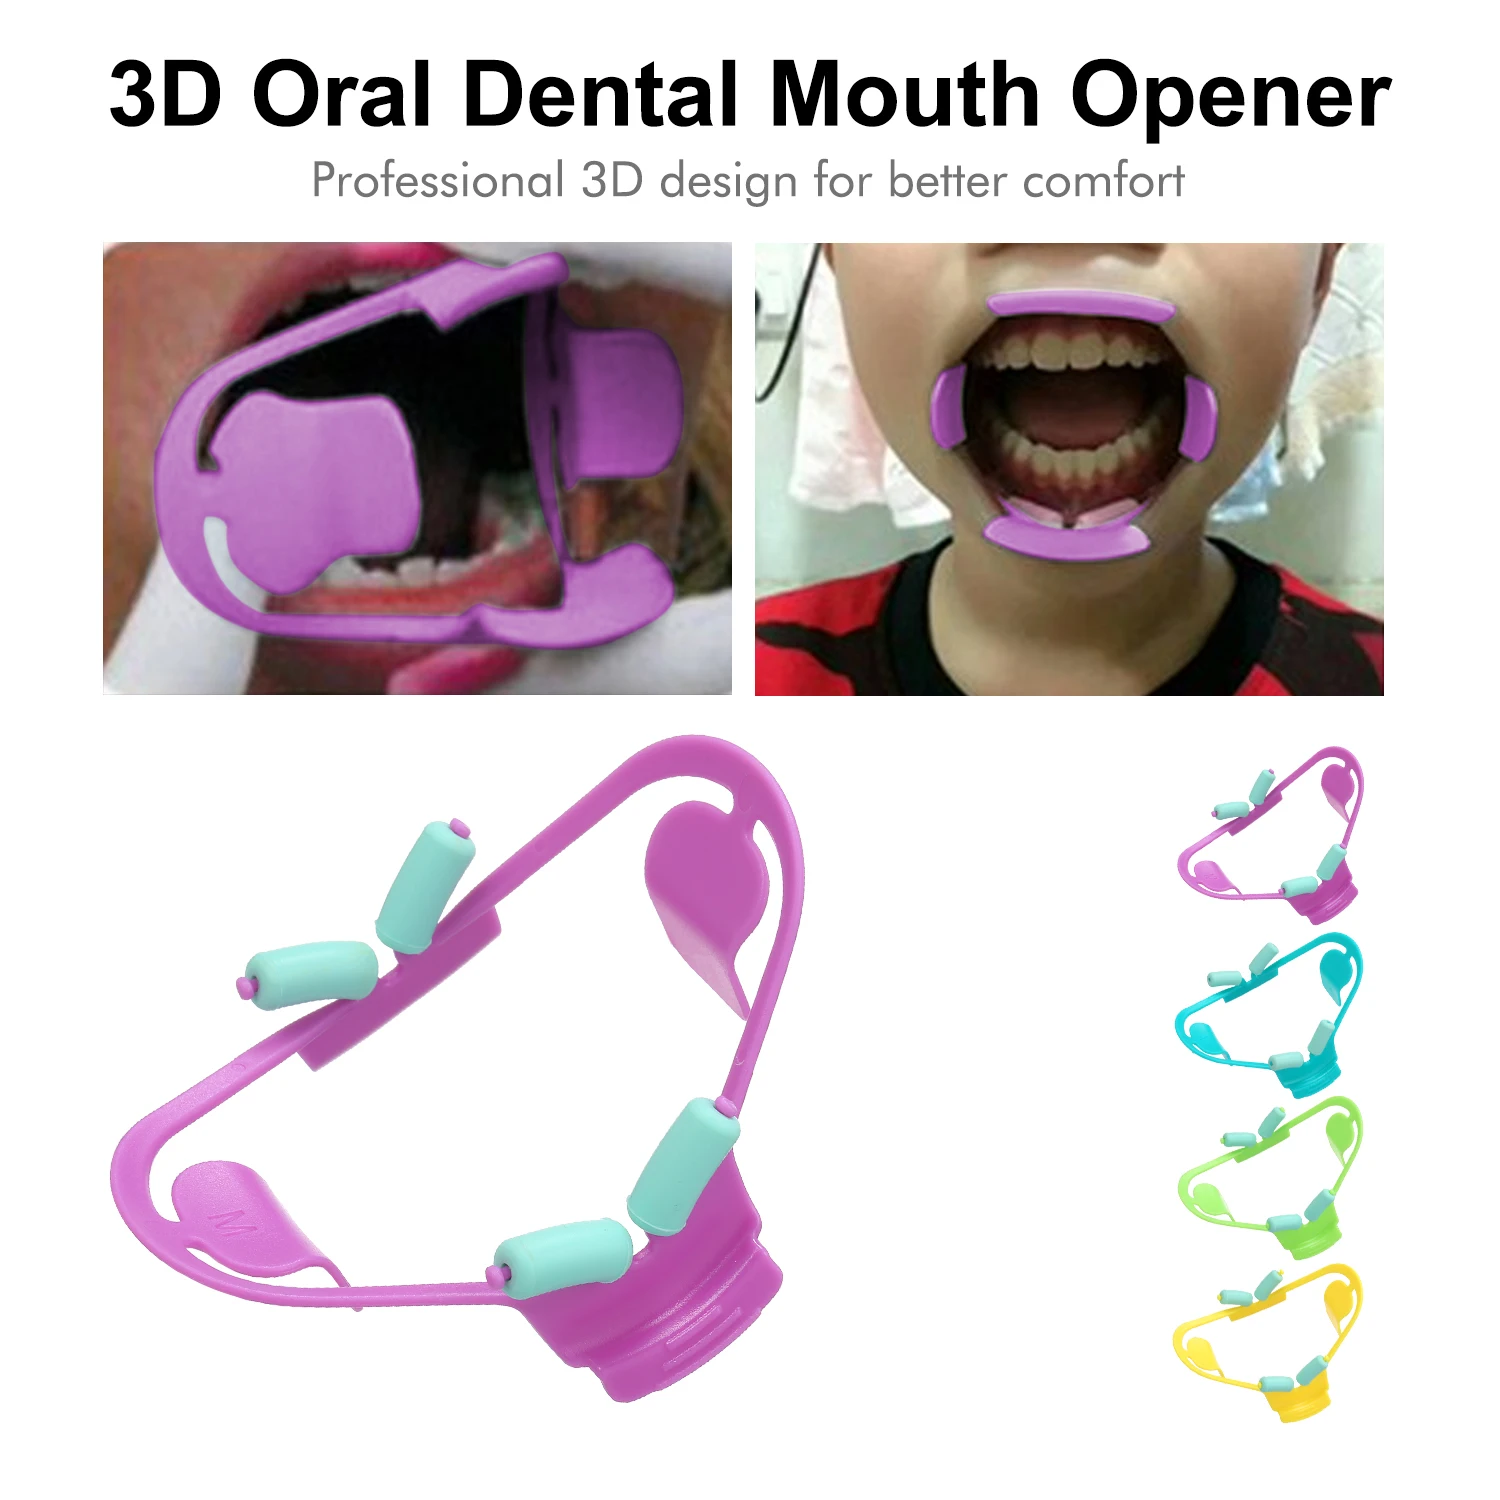 Prop ортодонтический взрослый профессиональный уход за полостью рта инструменты 3D стоматологический рот открывалка для интраоральной щеки многоразовый расширитель губ